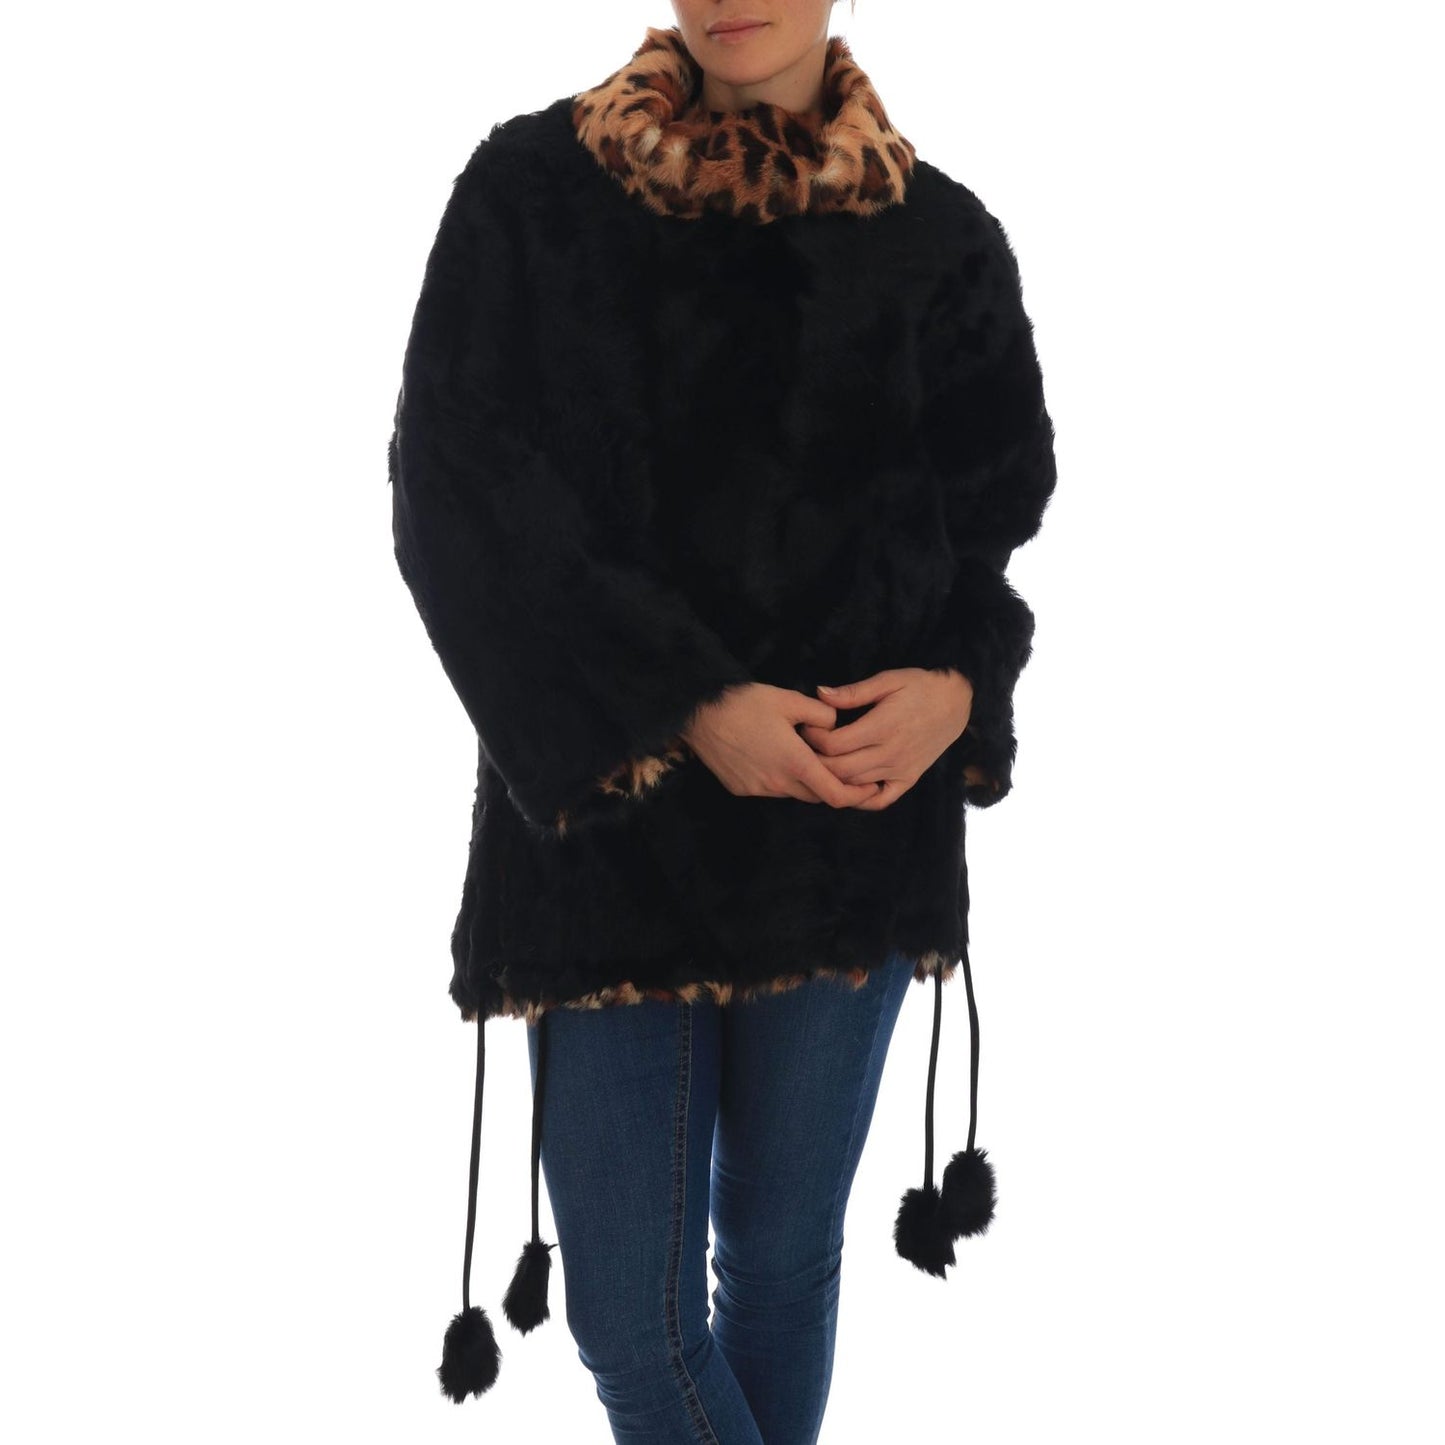 Dolce & Gabbana Elegant Black Lamb Fur Short Coat black-lamb-leopard-print-fur-coat-jacket 654682-black-lamb-leopard-print-fur-coat-jacket.jpg